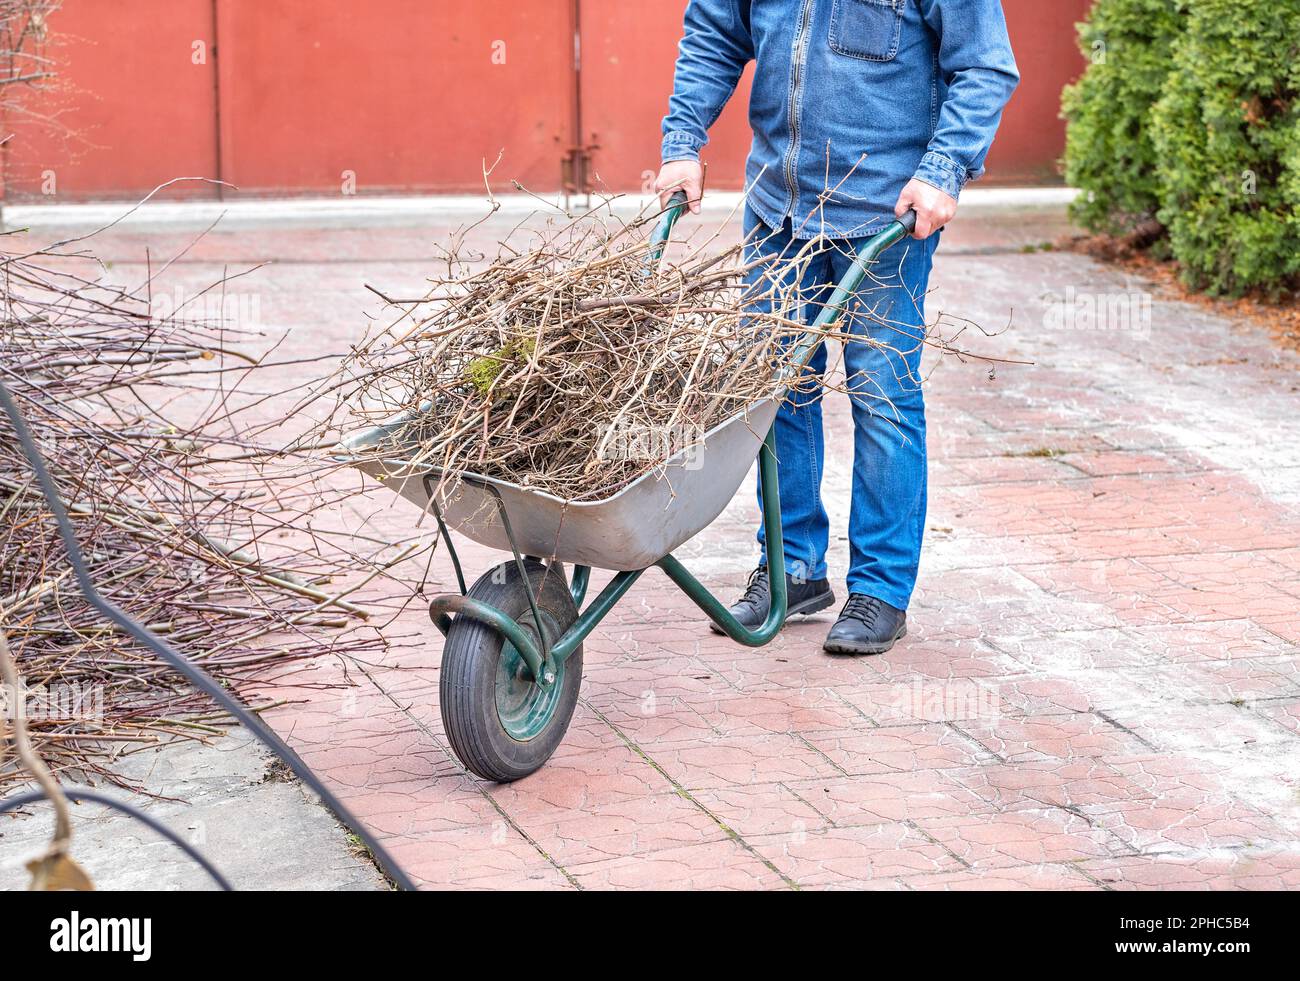 Un jardinero utiliza una carretilla de jardín para transportar ramas de árboles cortadas durante la limpieza de primavera. Foto de stock